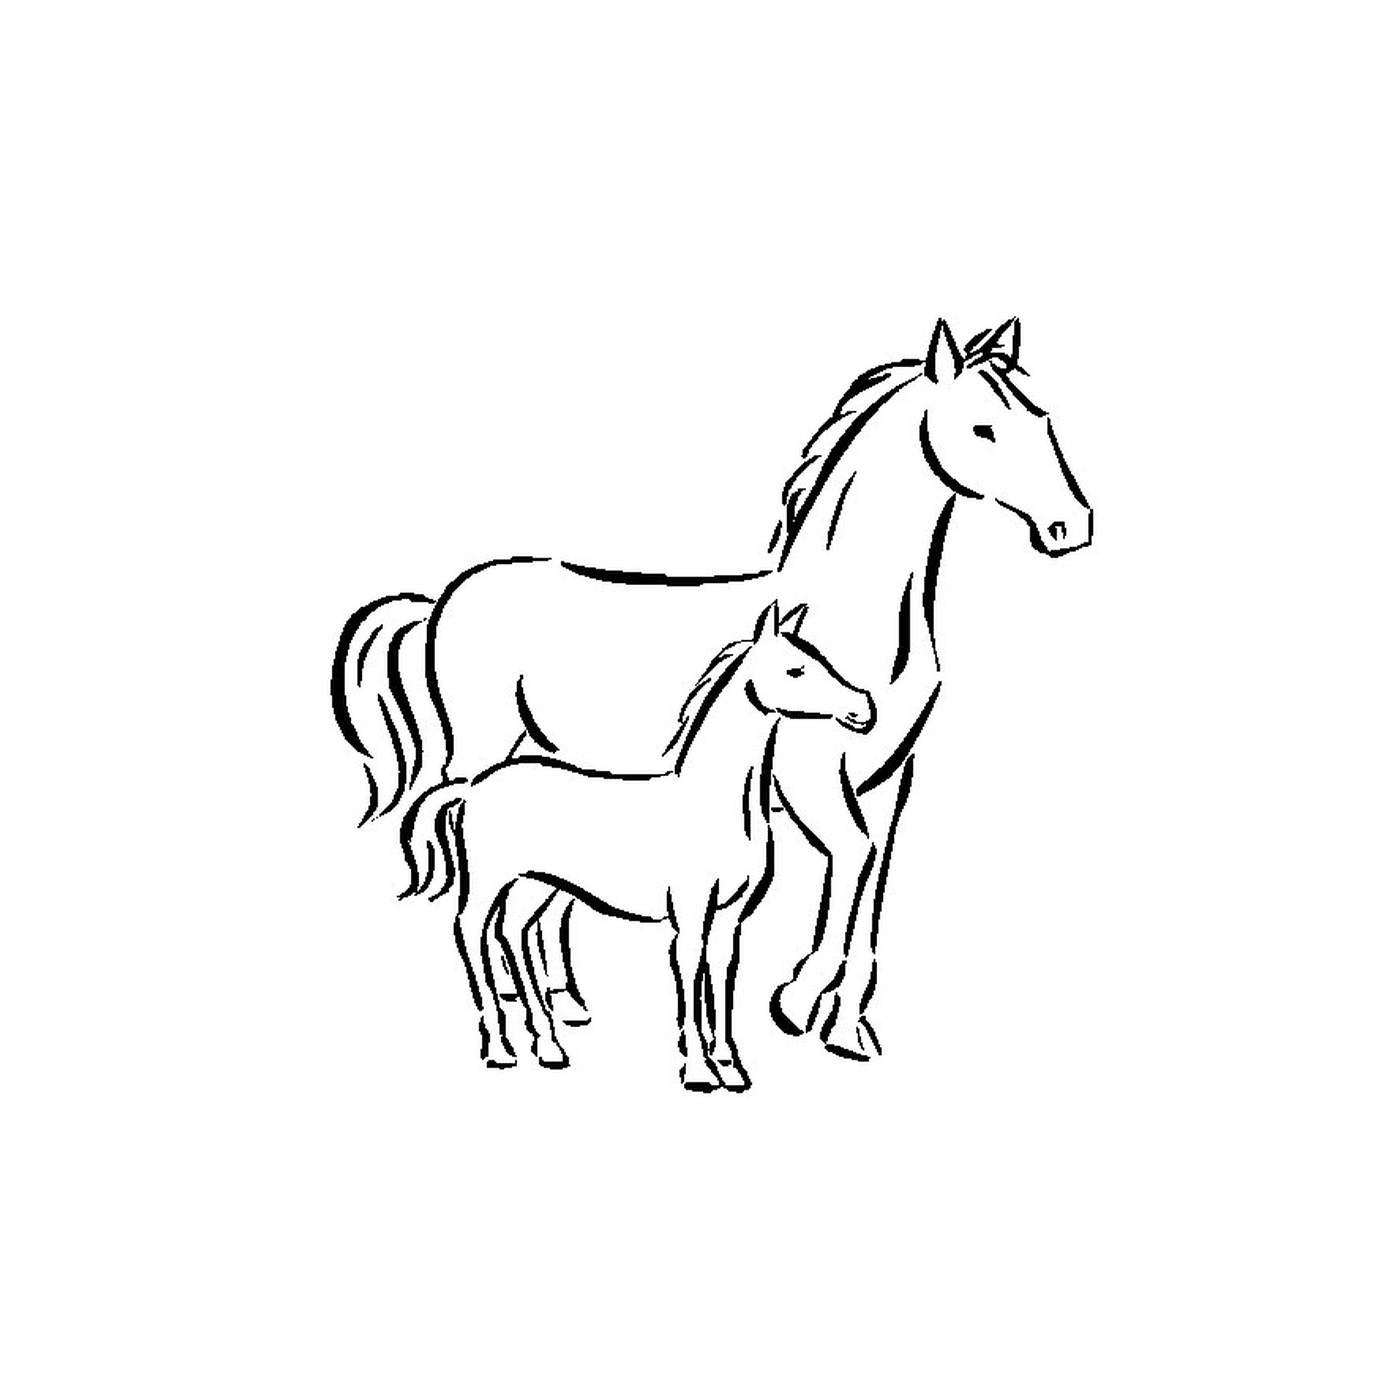  Cavalli - Un cavallo e un puledro in piedi fianco a fianco 